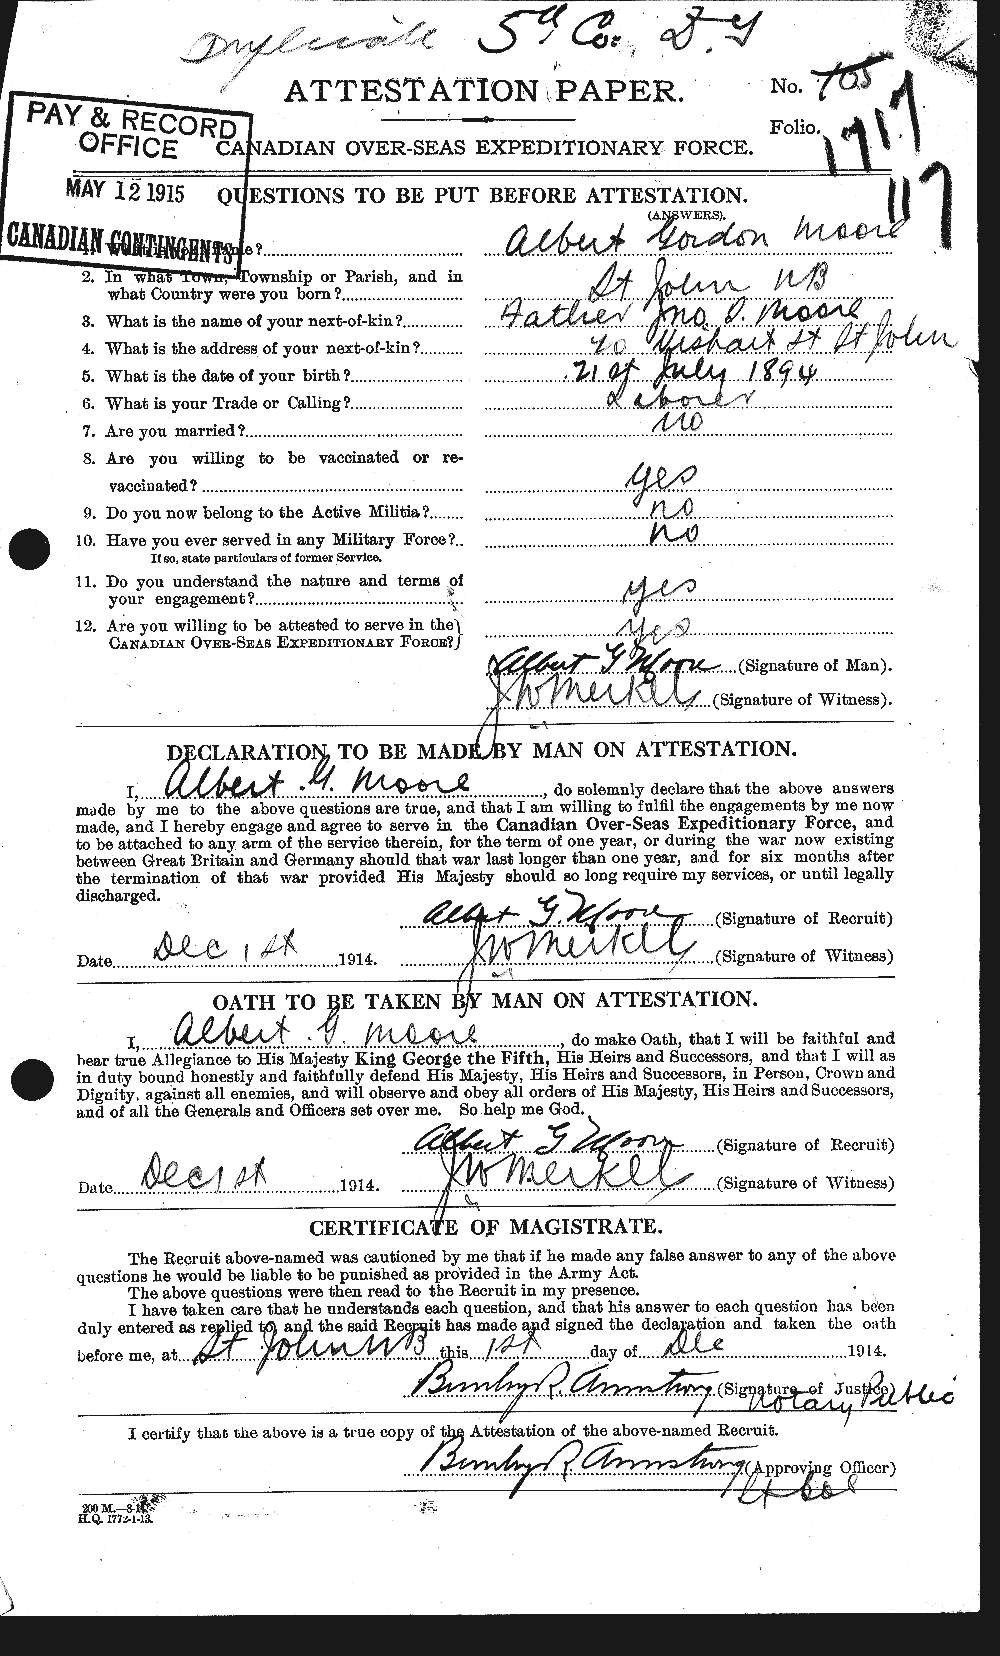 Dossiers du Personnel de la Première Guerre mondiale - CEC 506351a